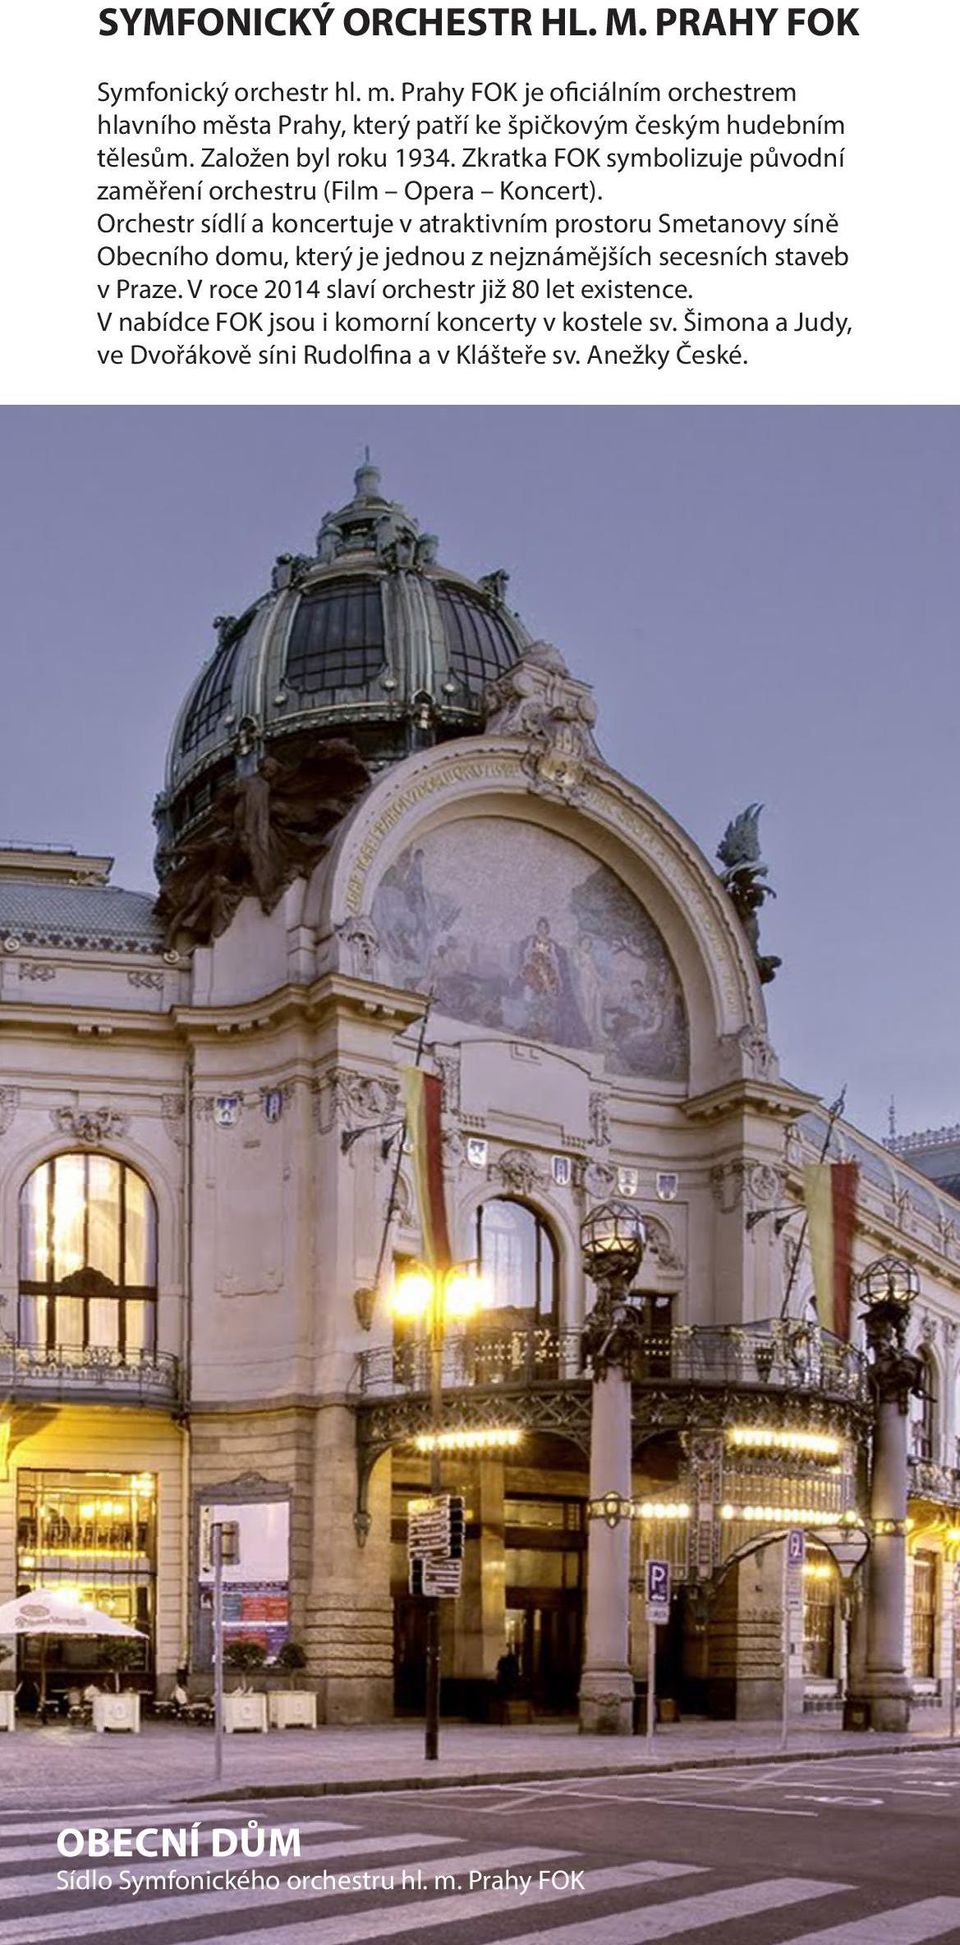 Orchestr sídlí a koncertuje v atraktivním prostoru Smetanovy síně Obecního domu, který je jednou z nejznámějších secesních staveb v Praze.